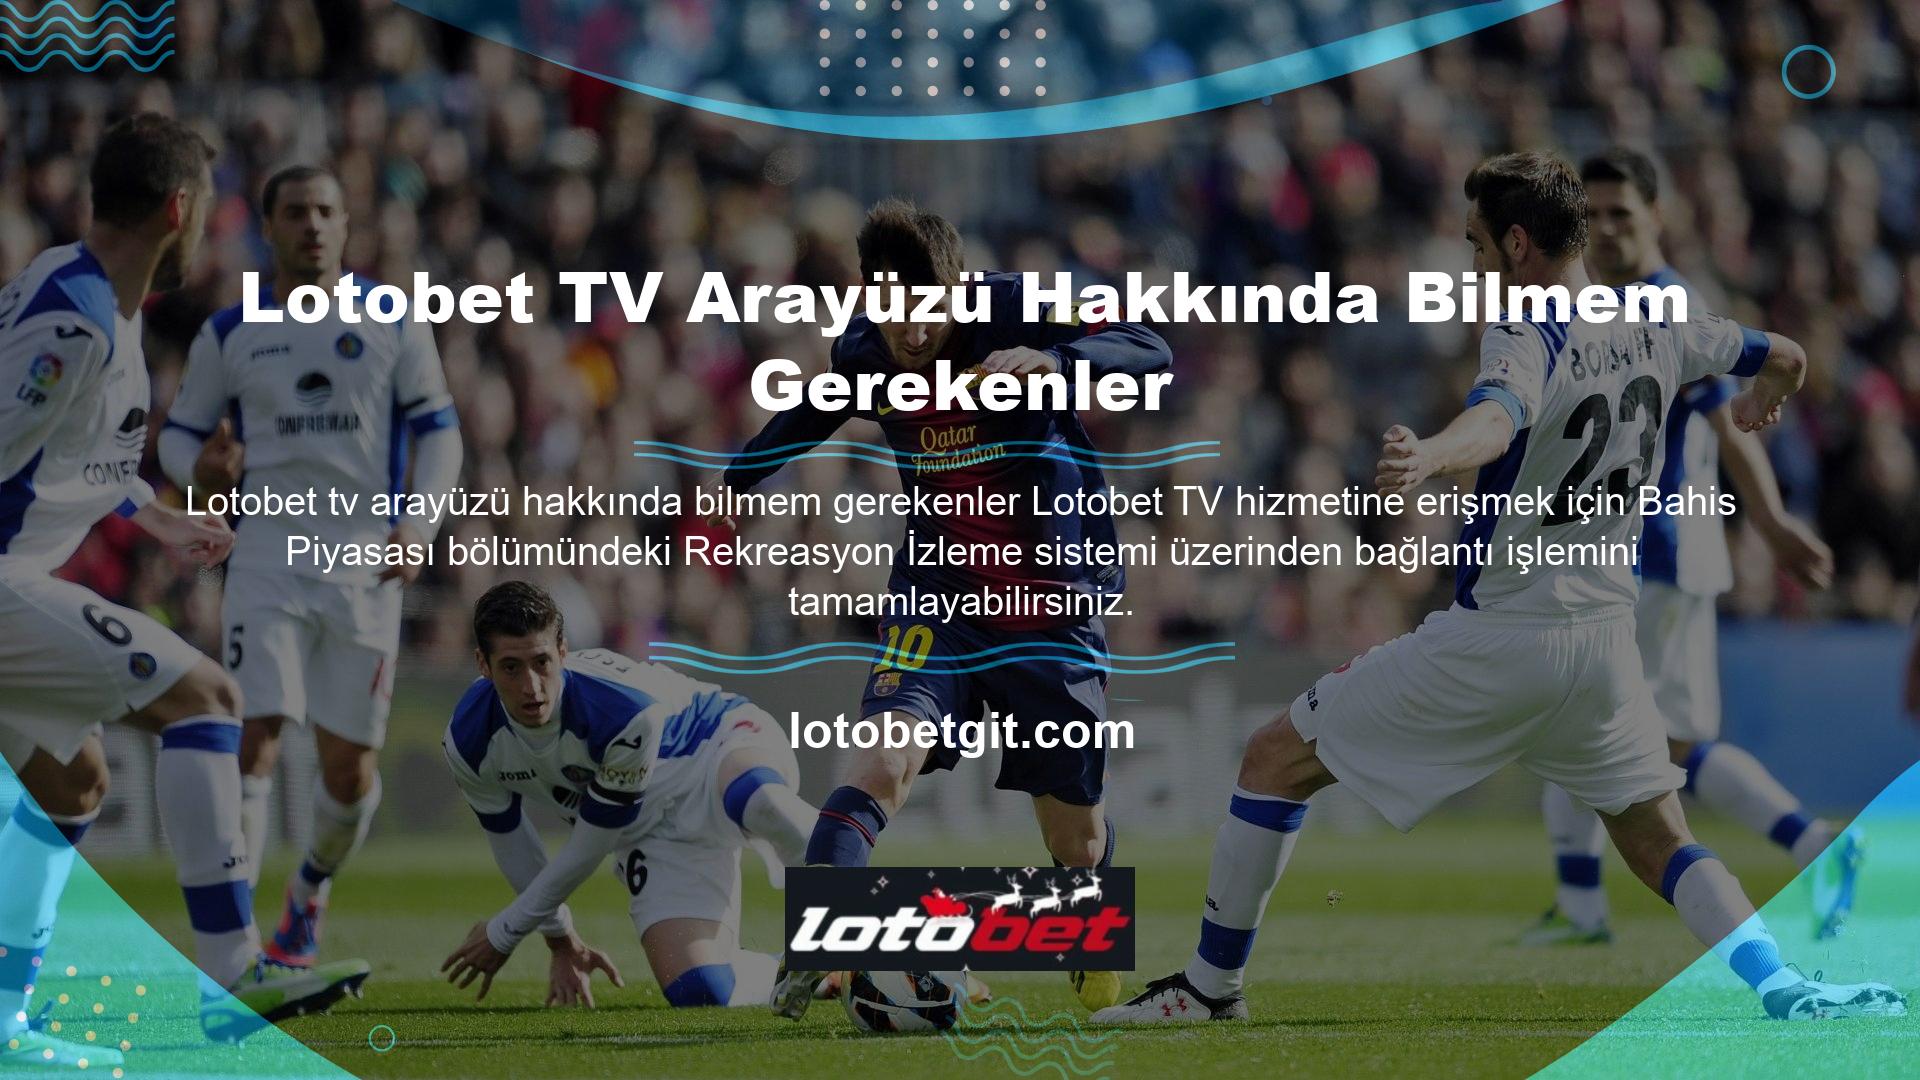 Ana sayfanın üst kısmındaki Lotobet TV sistemi, sezonları ve takımları liste formatında görüntüler